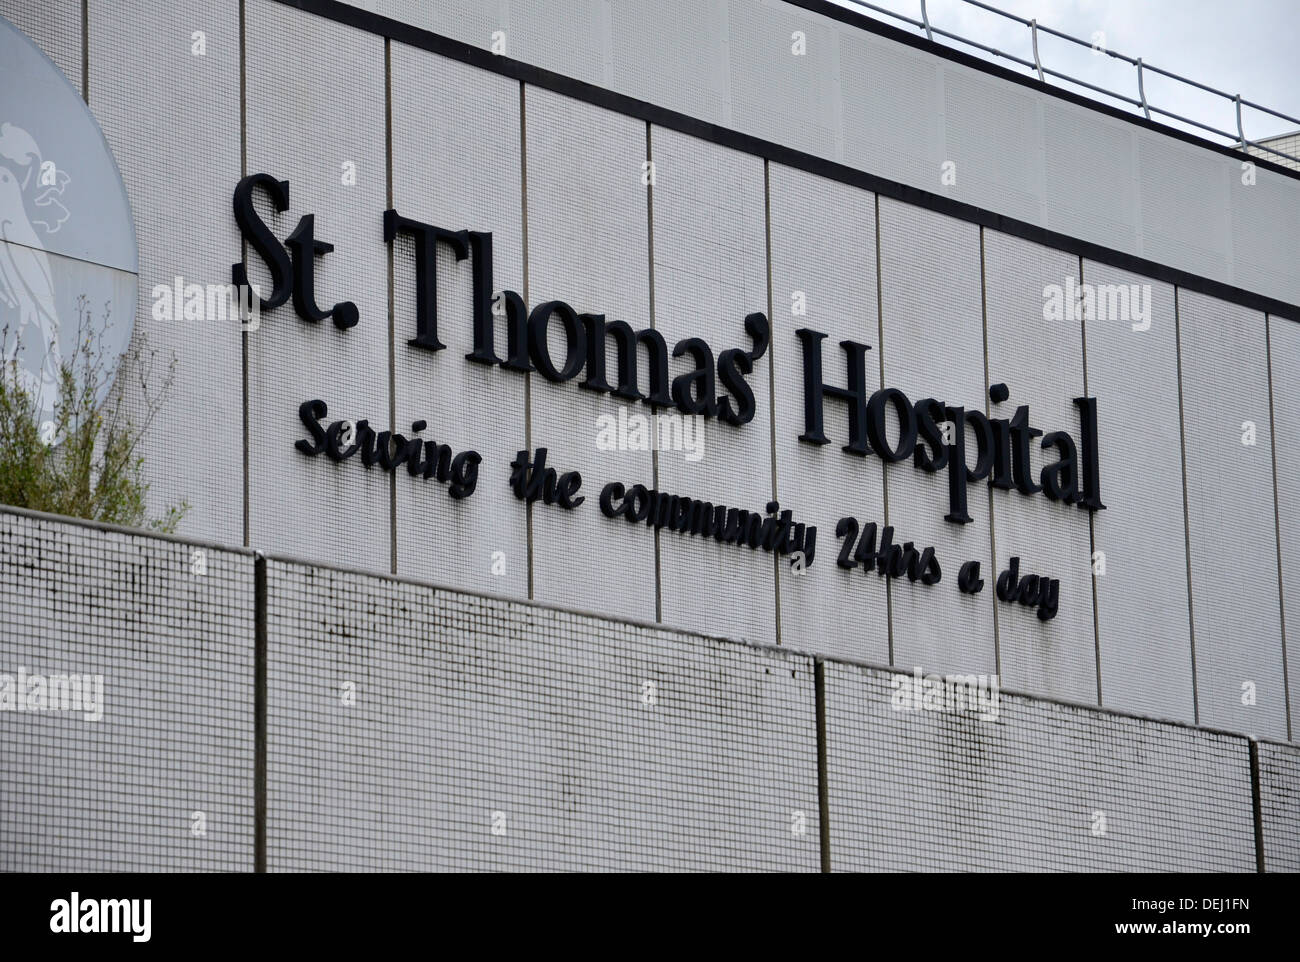 El Hospital de Santo Tomás en Lambeth, Londres Foto de stock